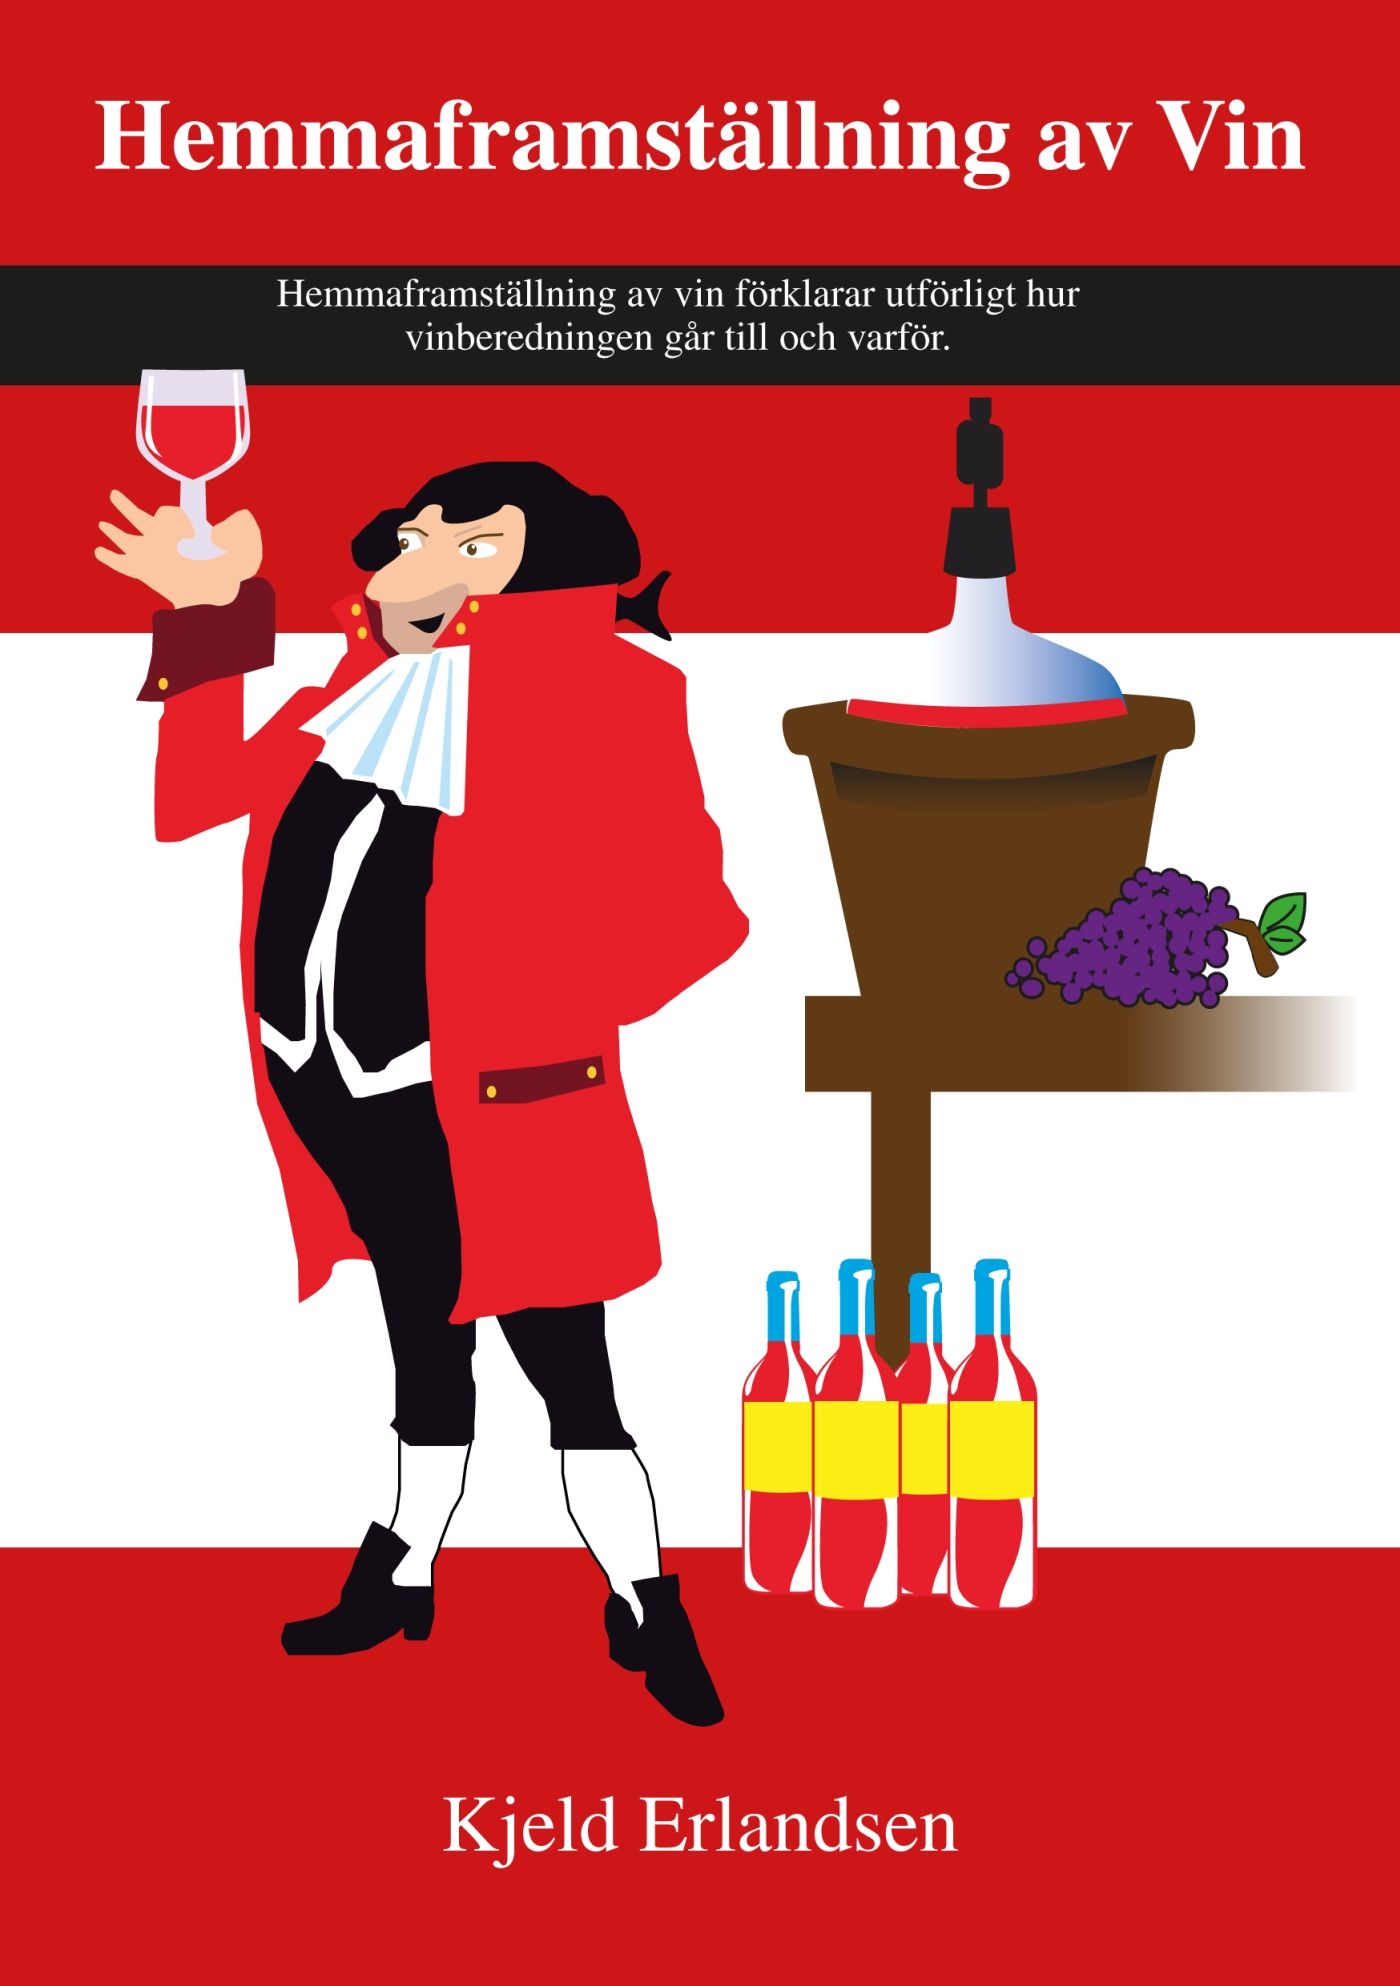 Hemmaframställning av Vin, e-bok av Kjeld Erlandsen